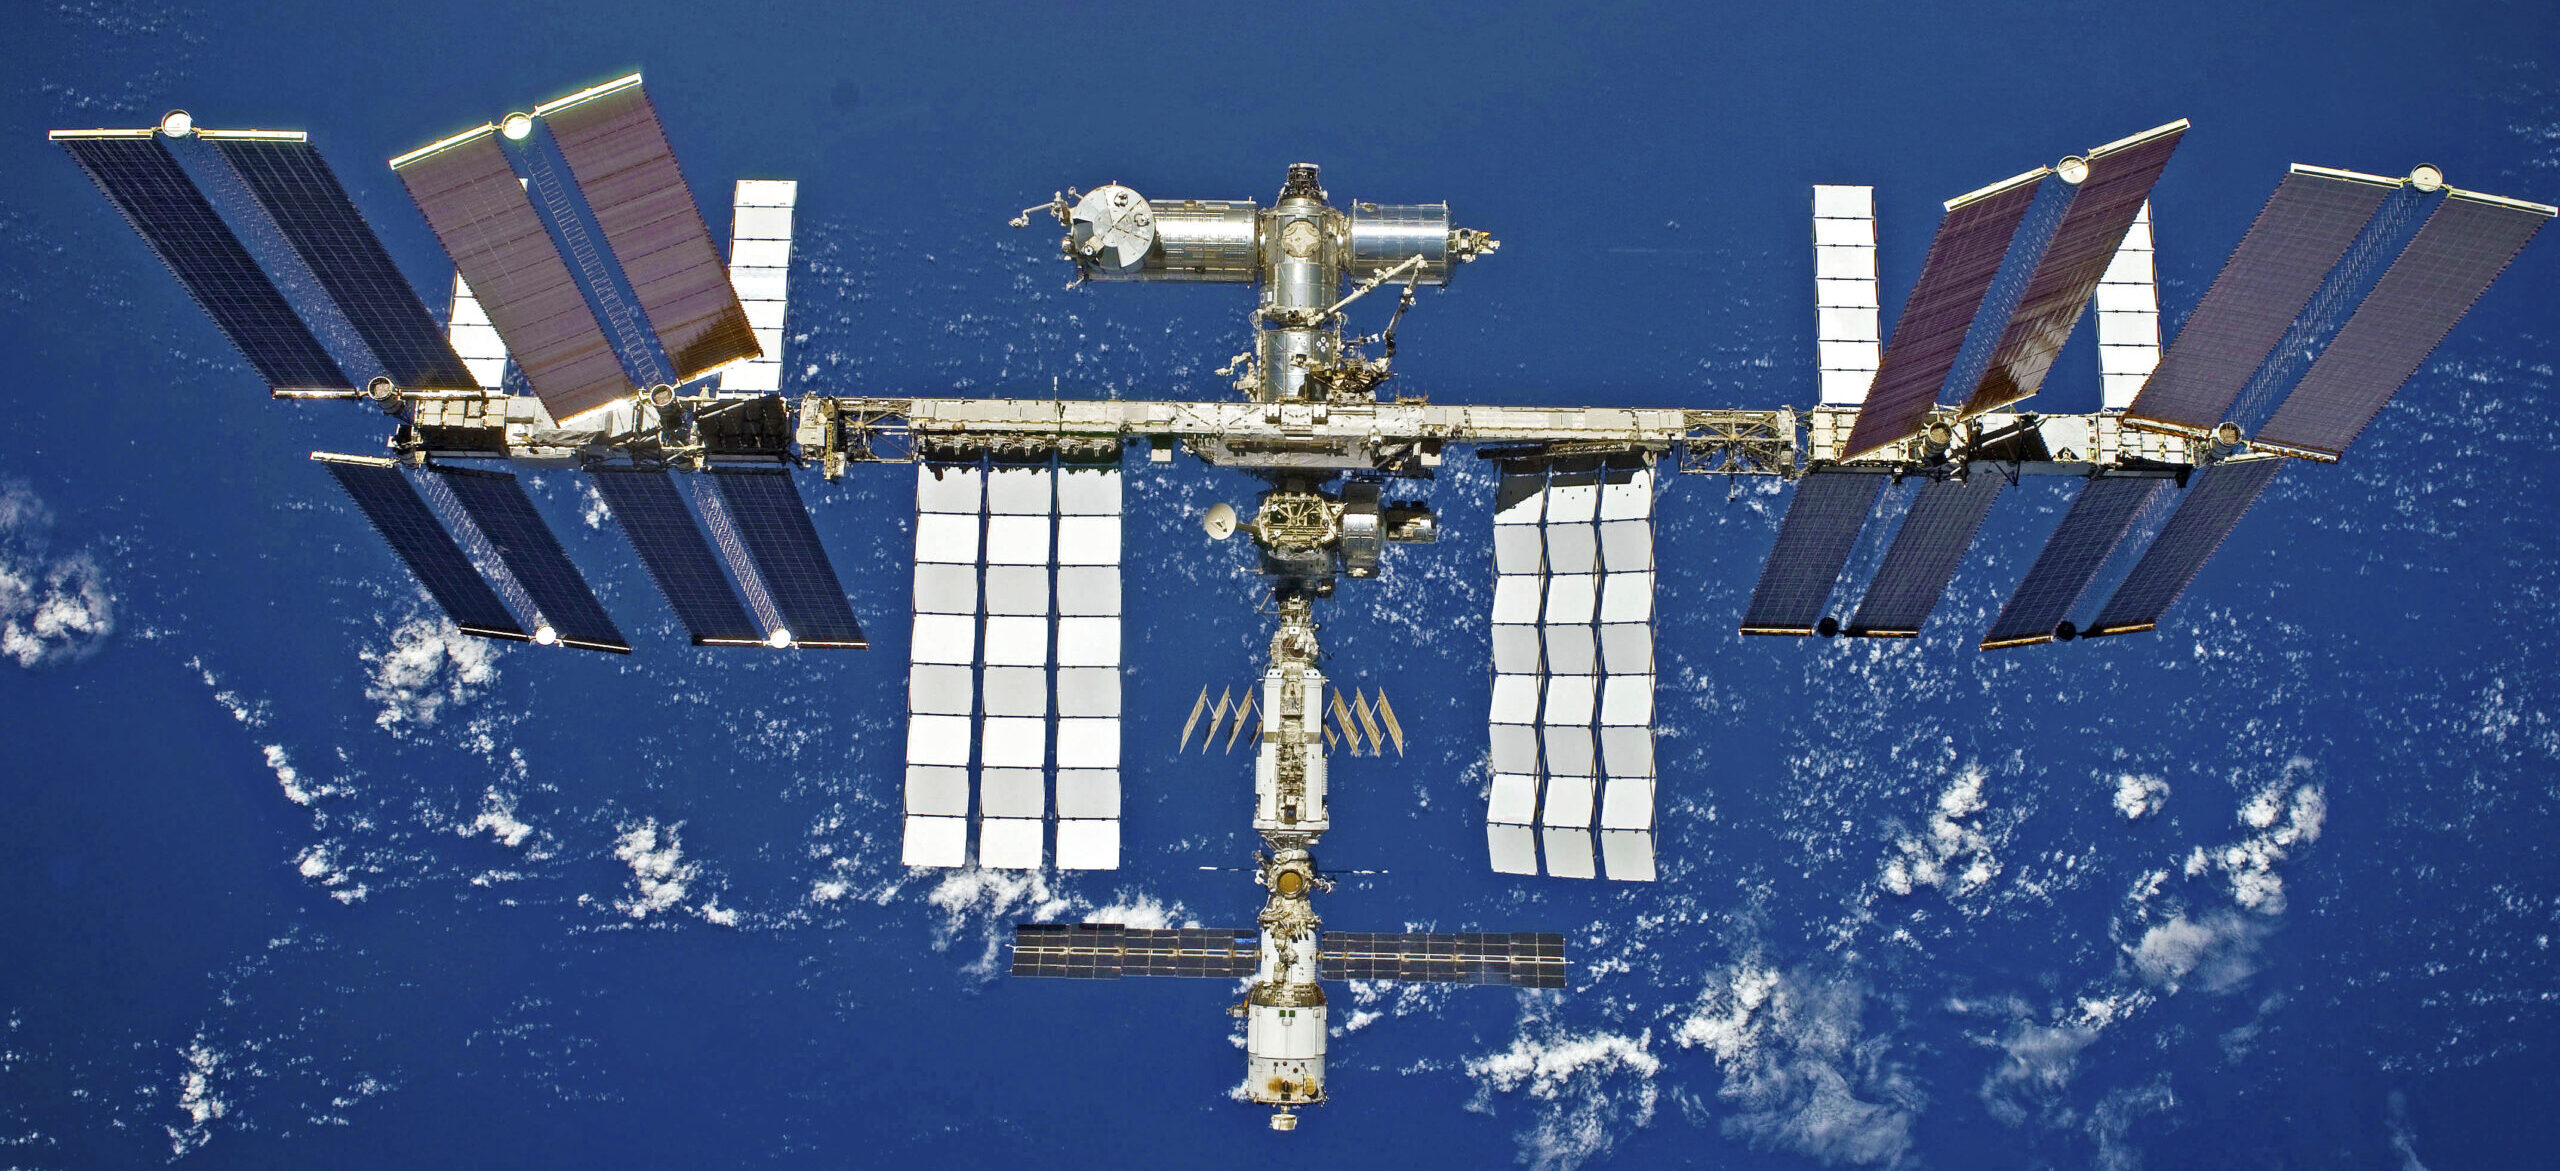 Billede af rumstationen taget fra en rumfærge i 2009